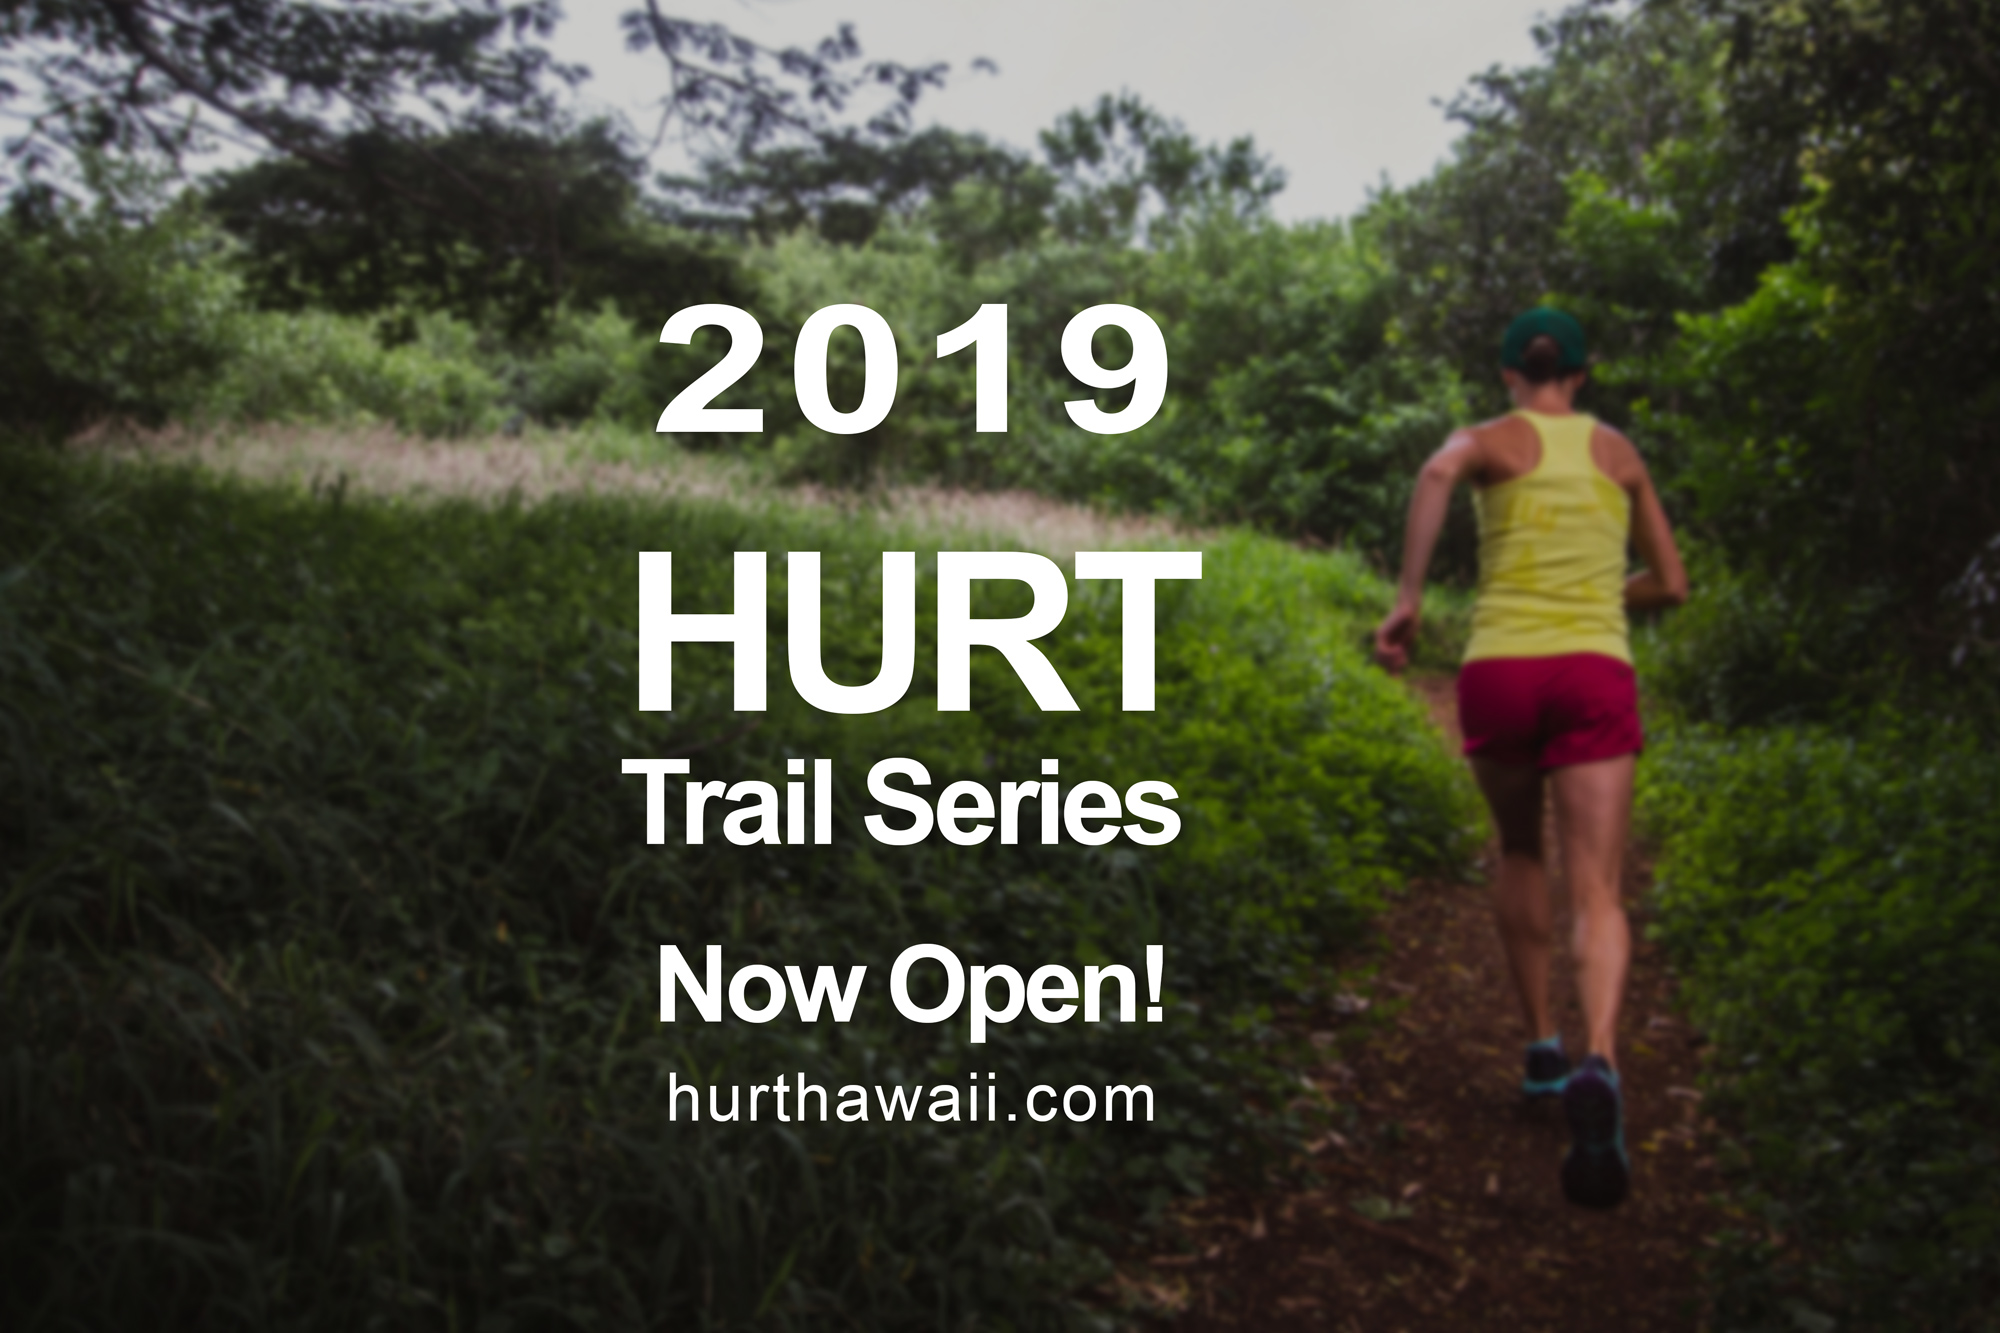 2019 Trail Series Announcement